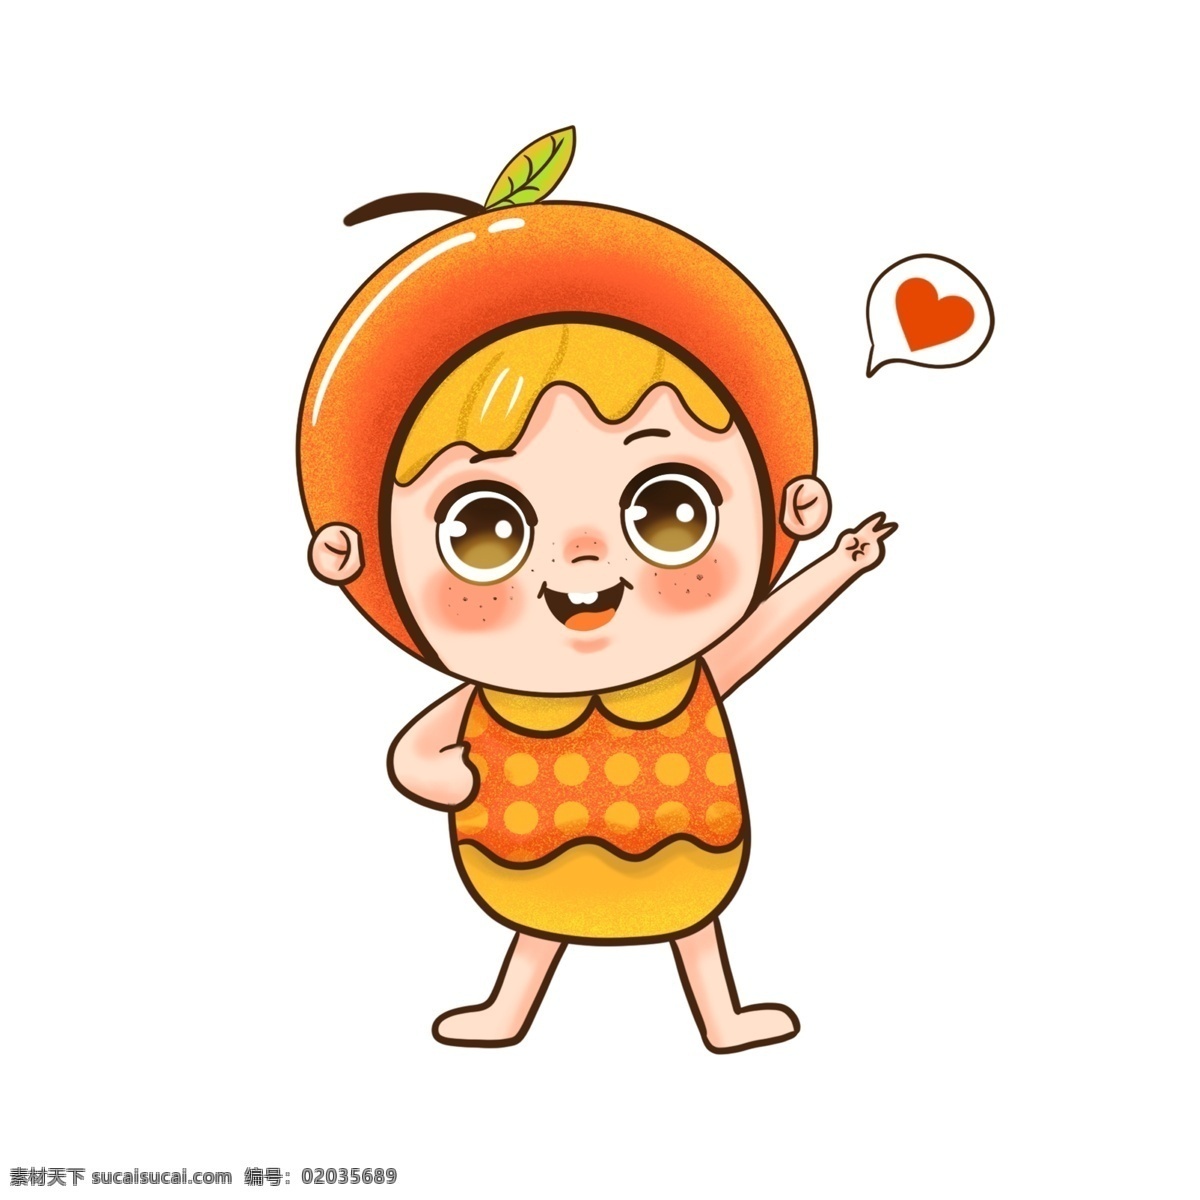 可爱 苹果 卡通 形象 笑脸 开心 水果 吉祥物 卡通人物 爱心